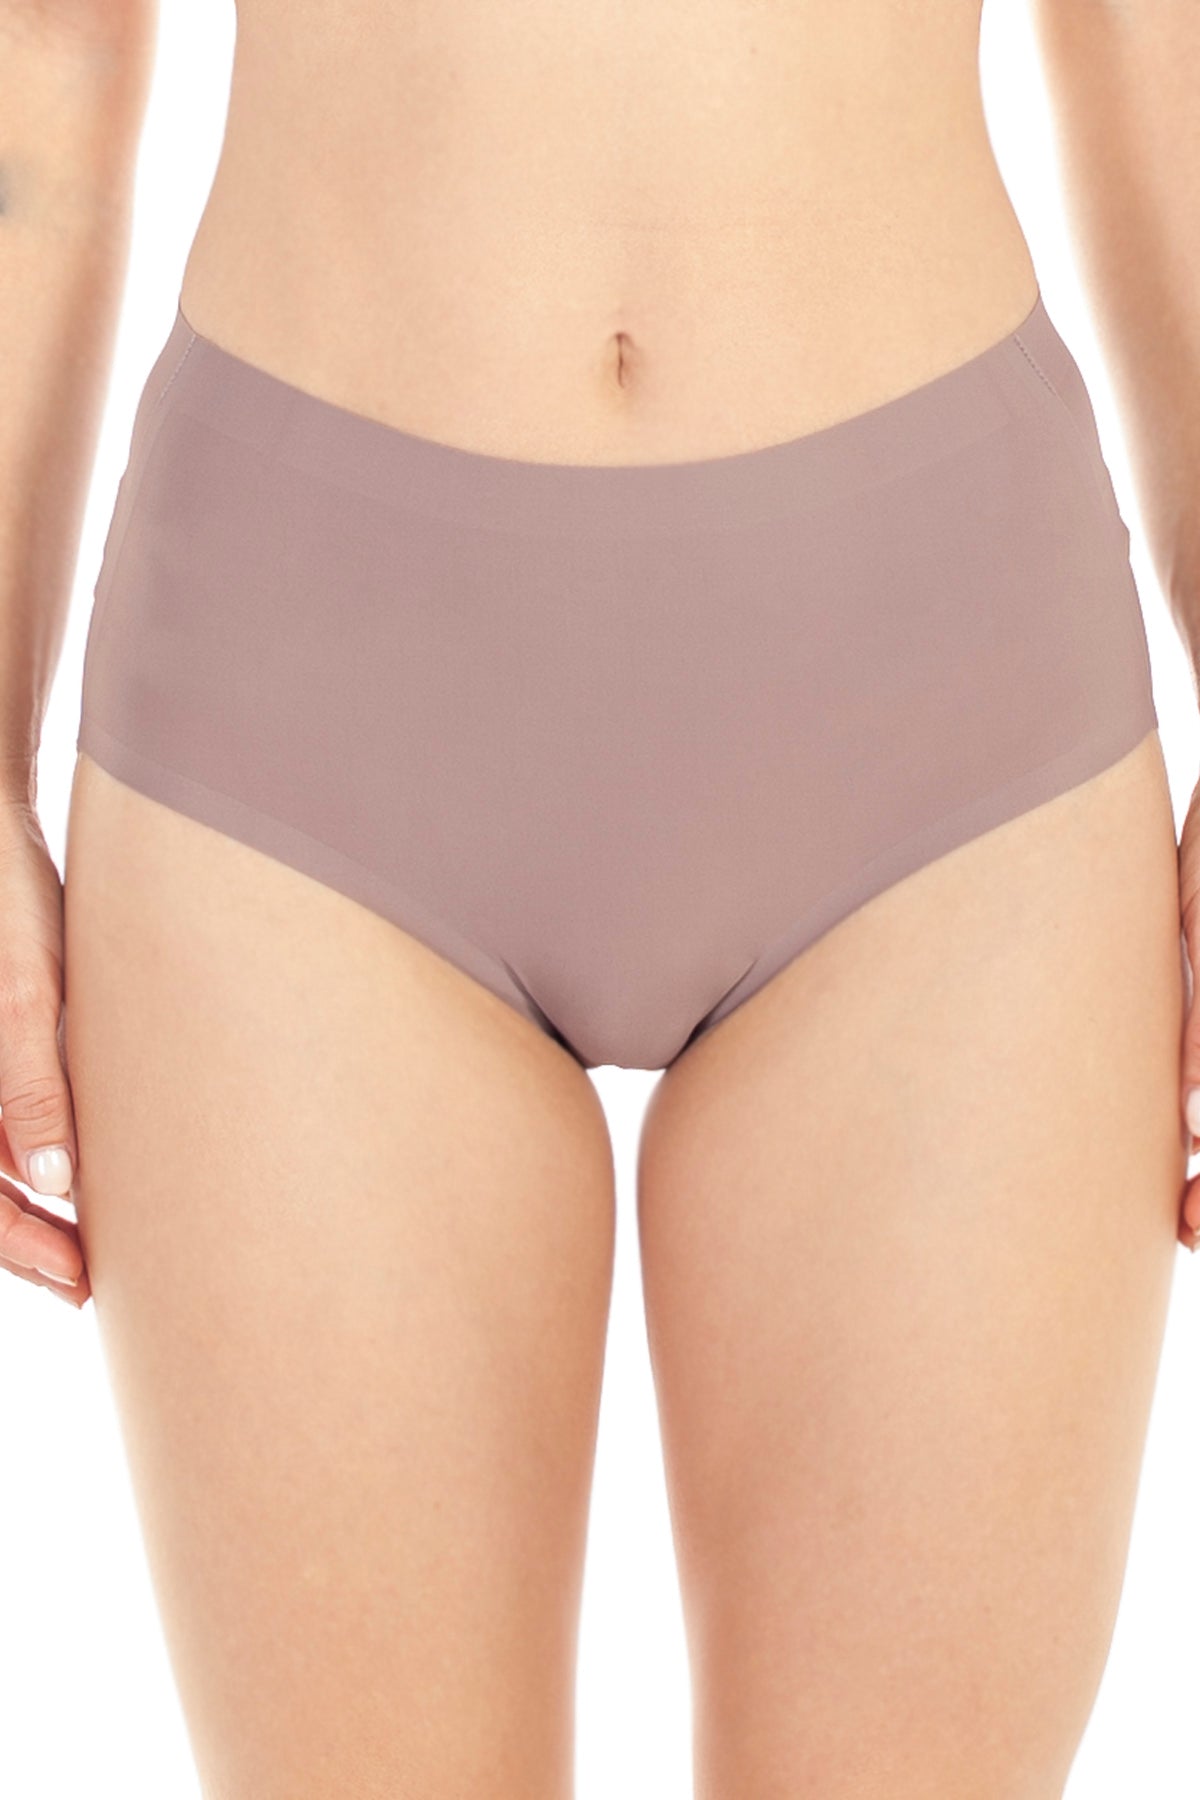 Antibacterial Anti-Odor Moisture Wicking Underwear Panties